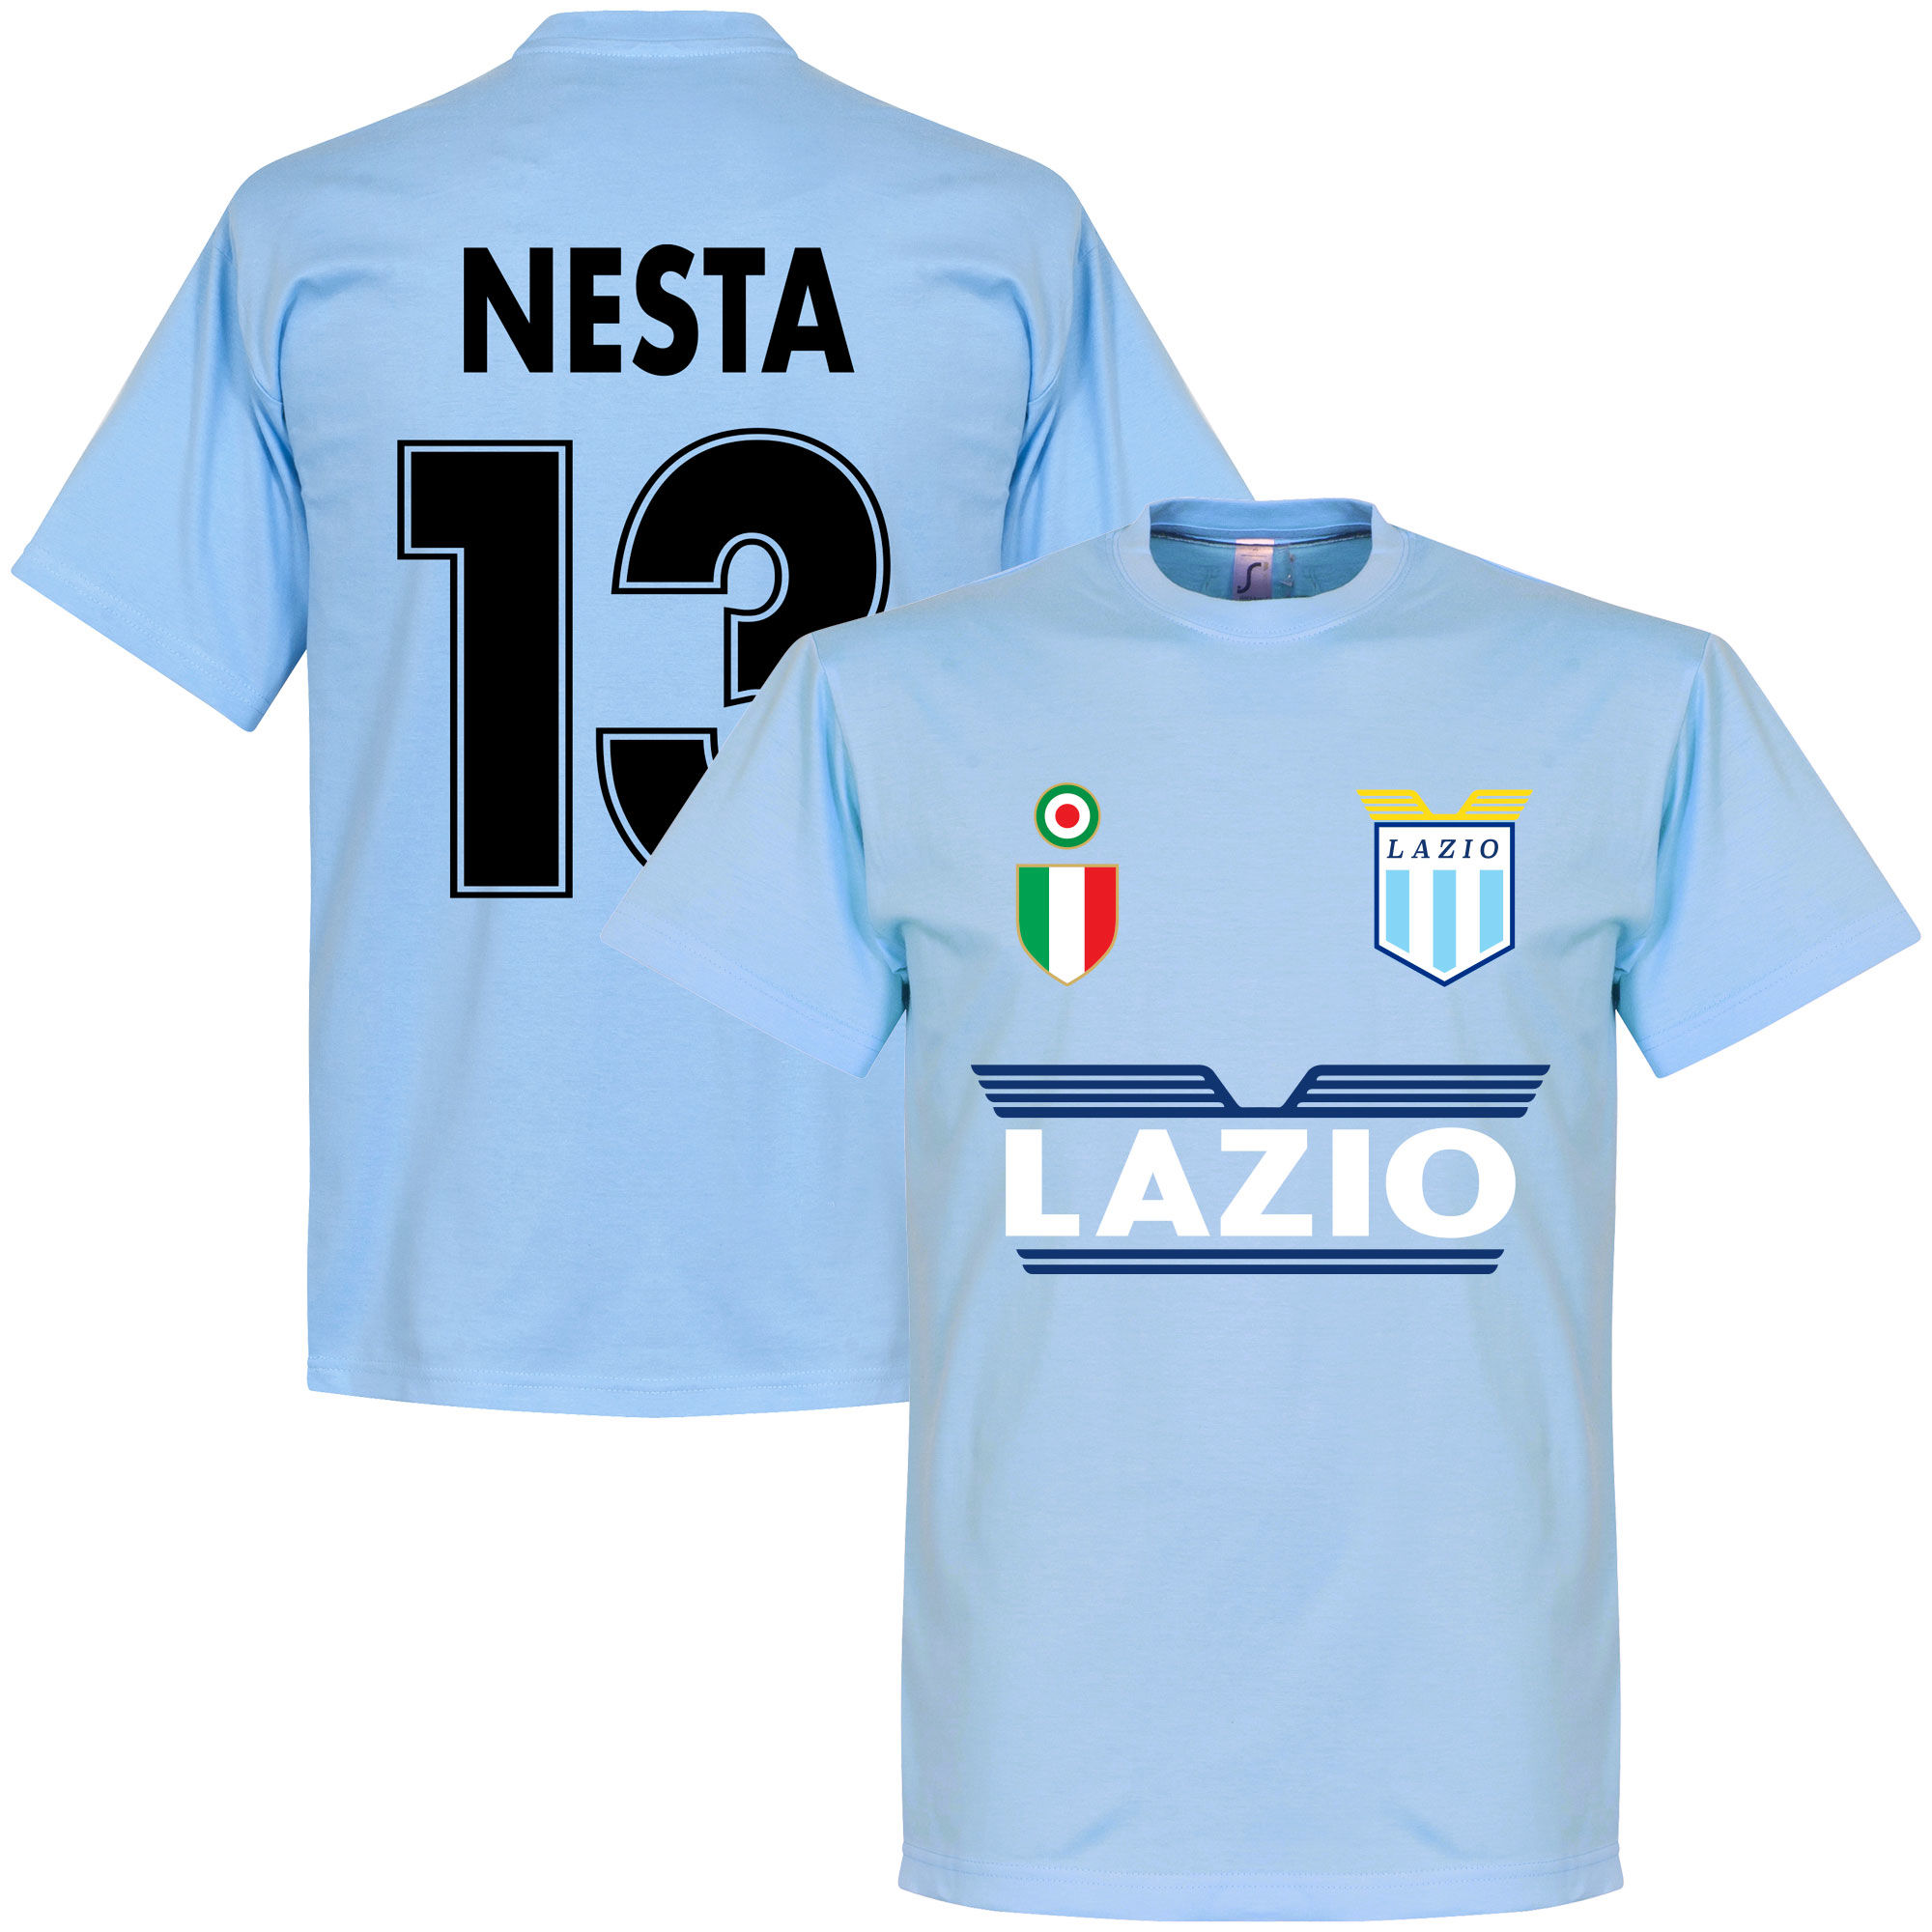 SS Lazio - Tričko - číslo 13, Alessandro Nesta, modré